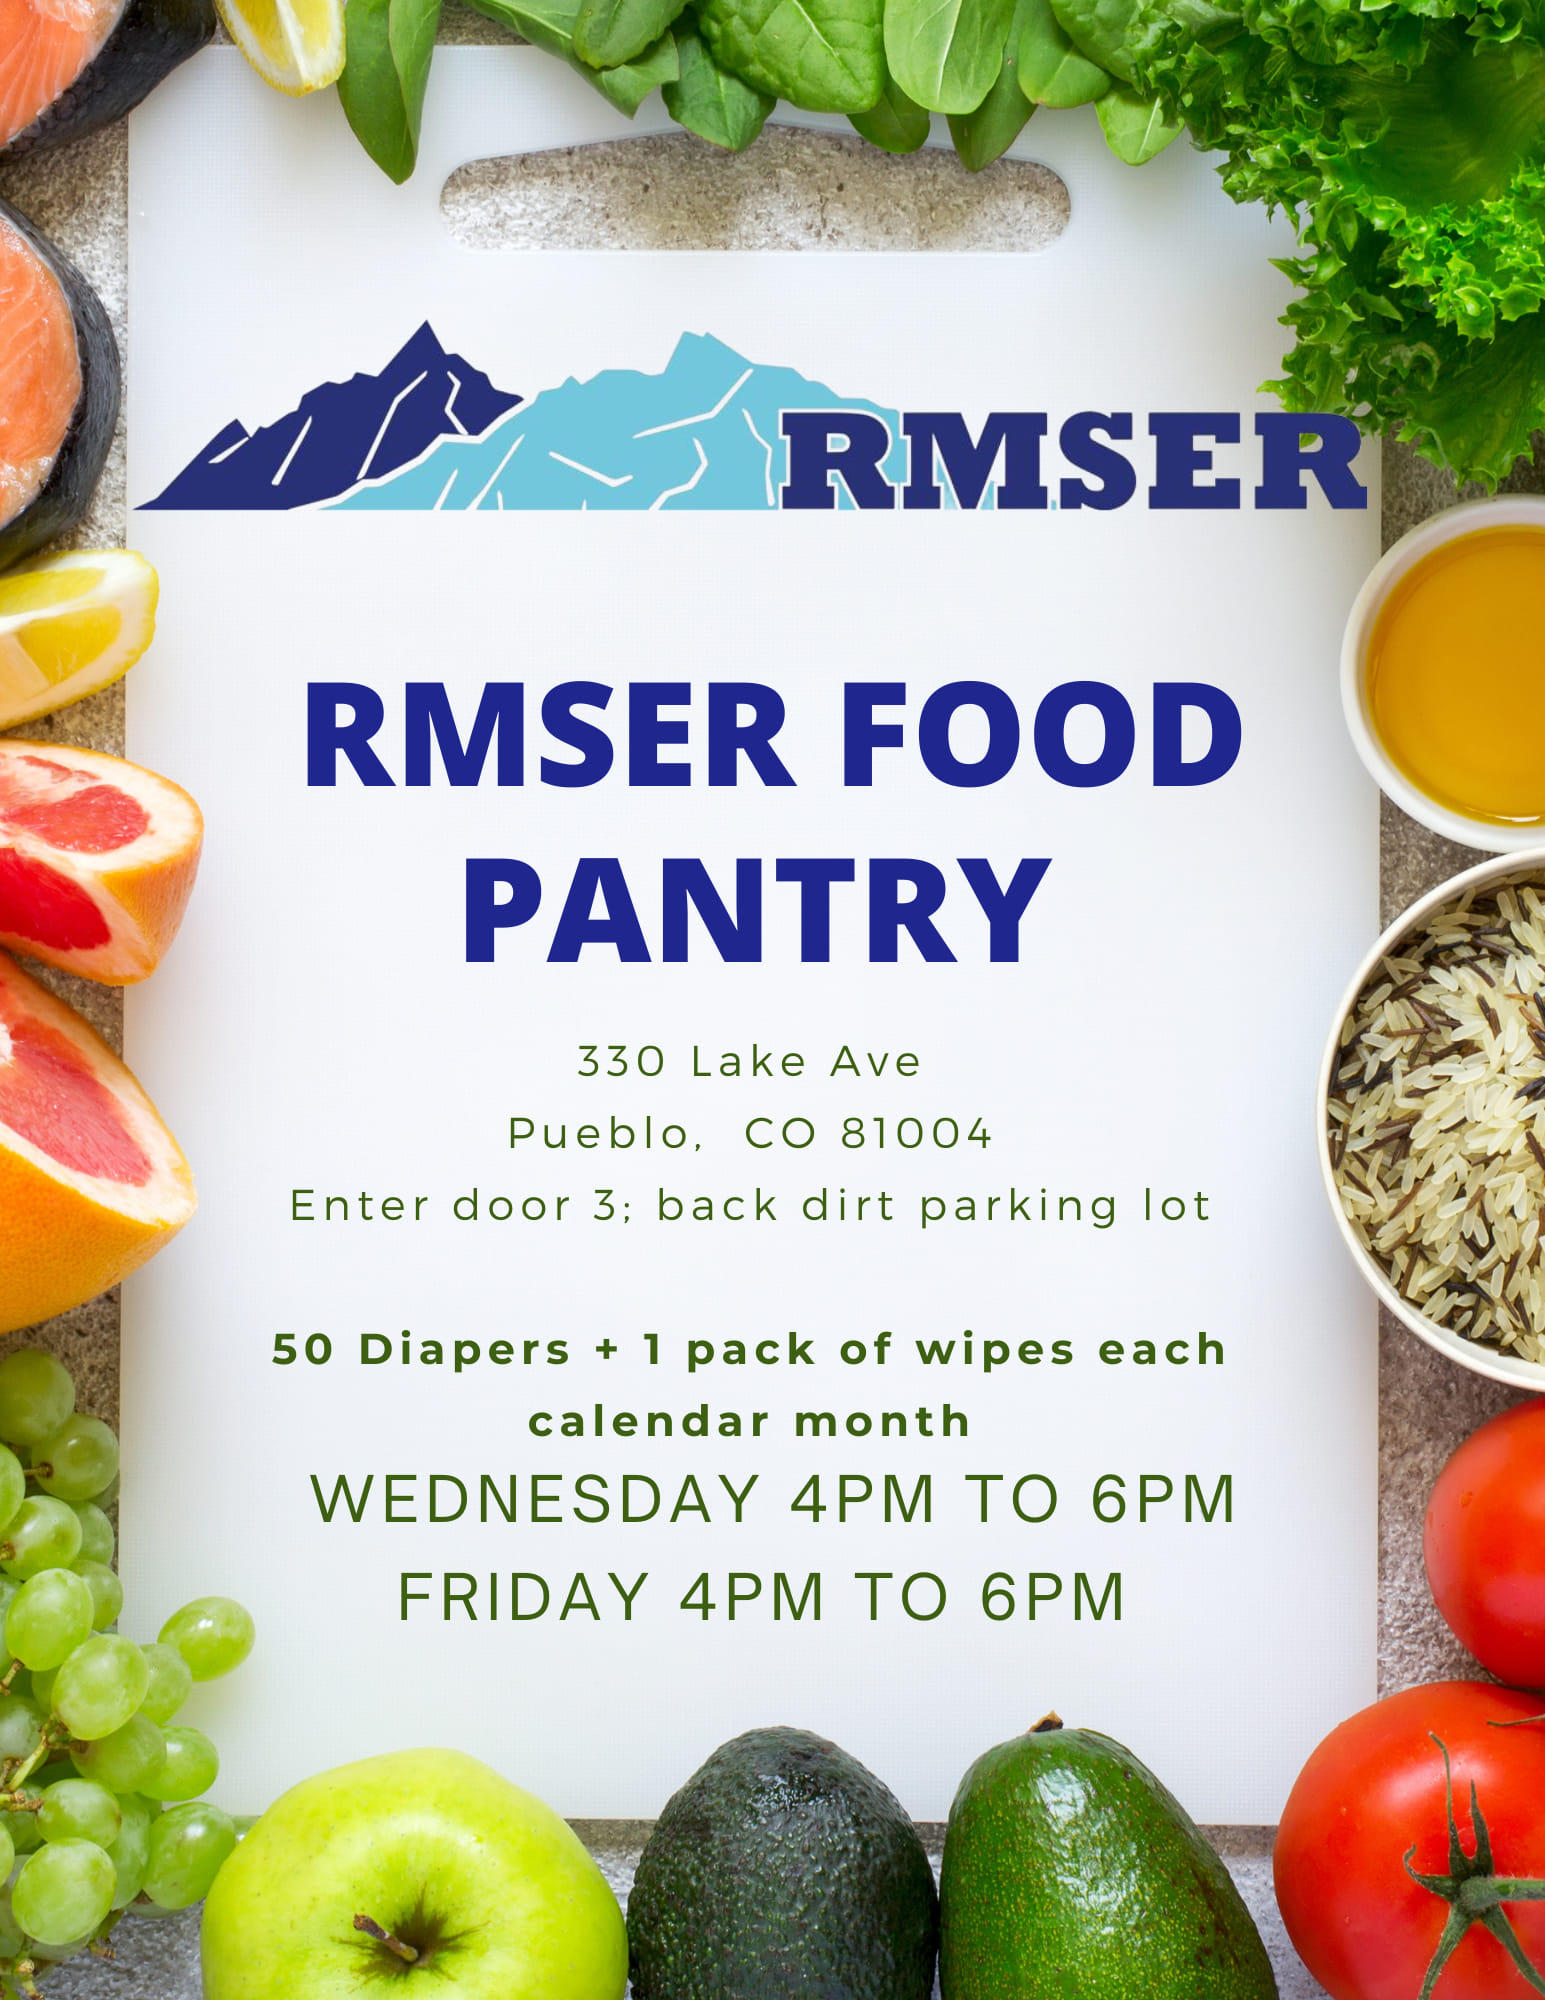 RMSER Food Pantry